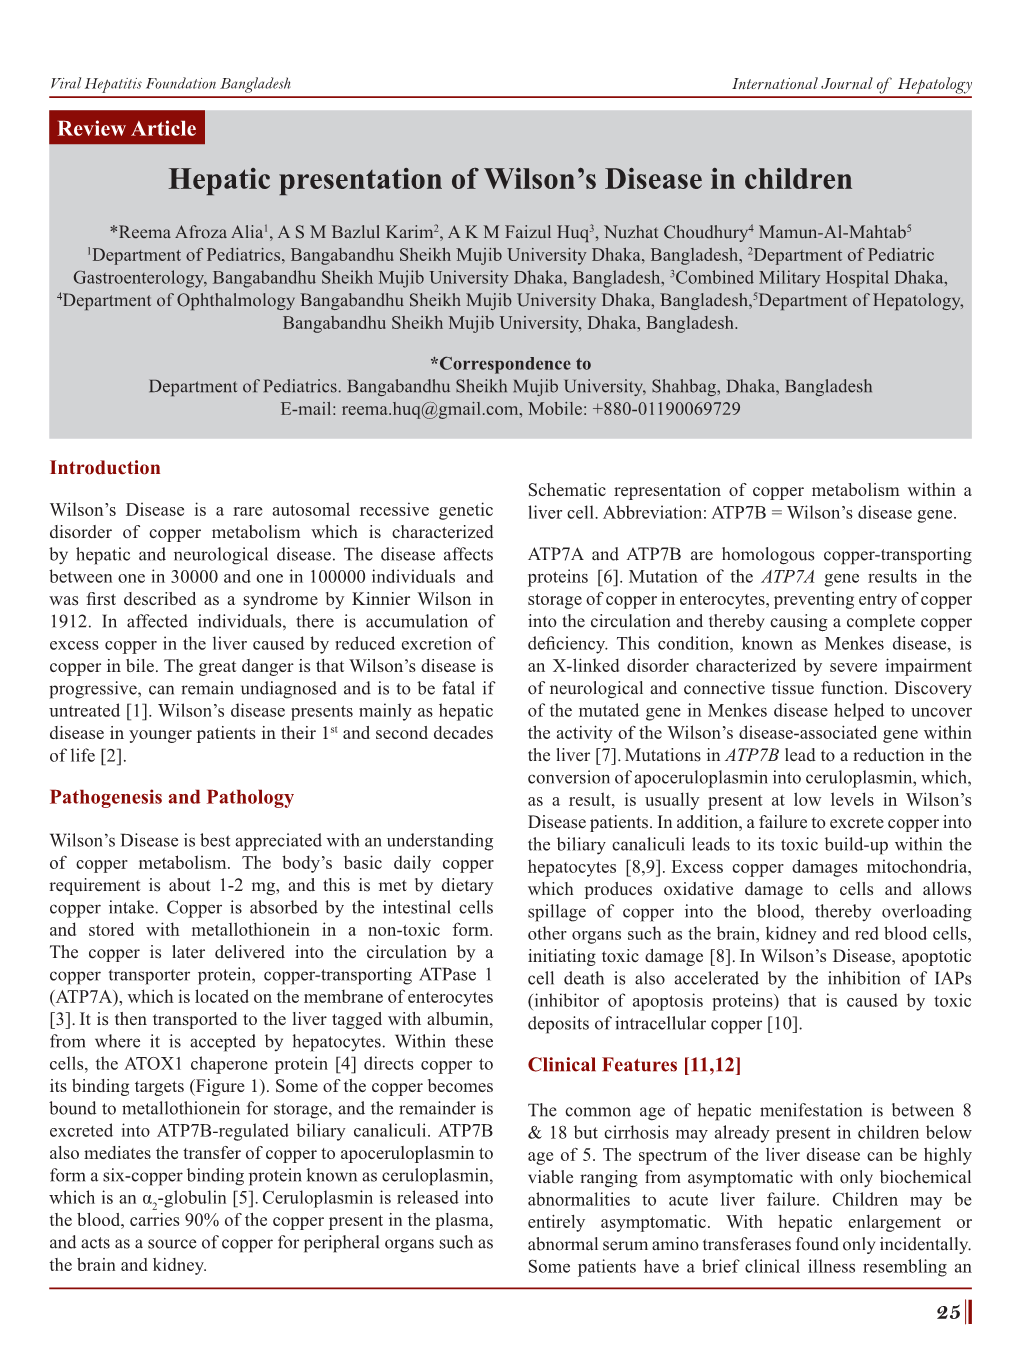 Hepatic Presentation of Wilson's Disease in Children